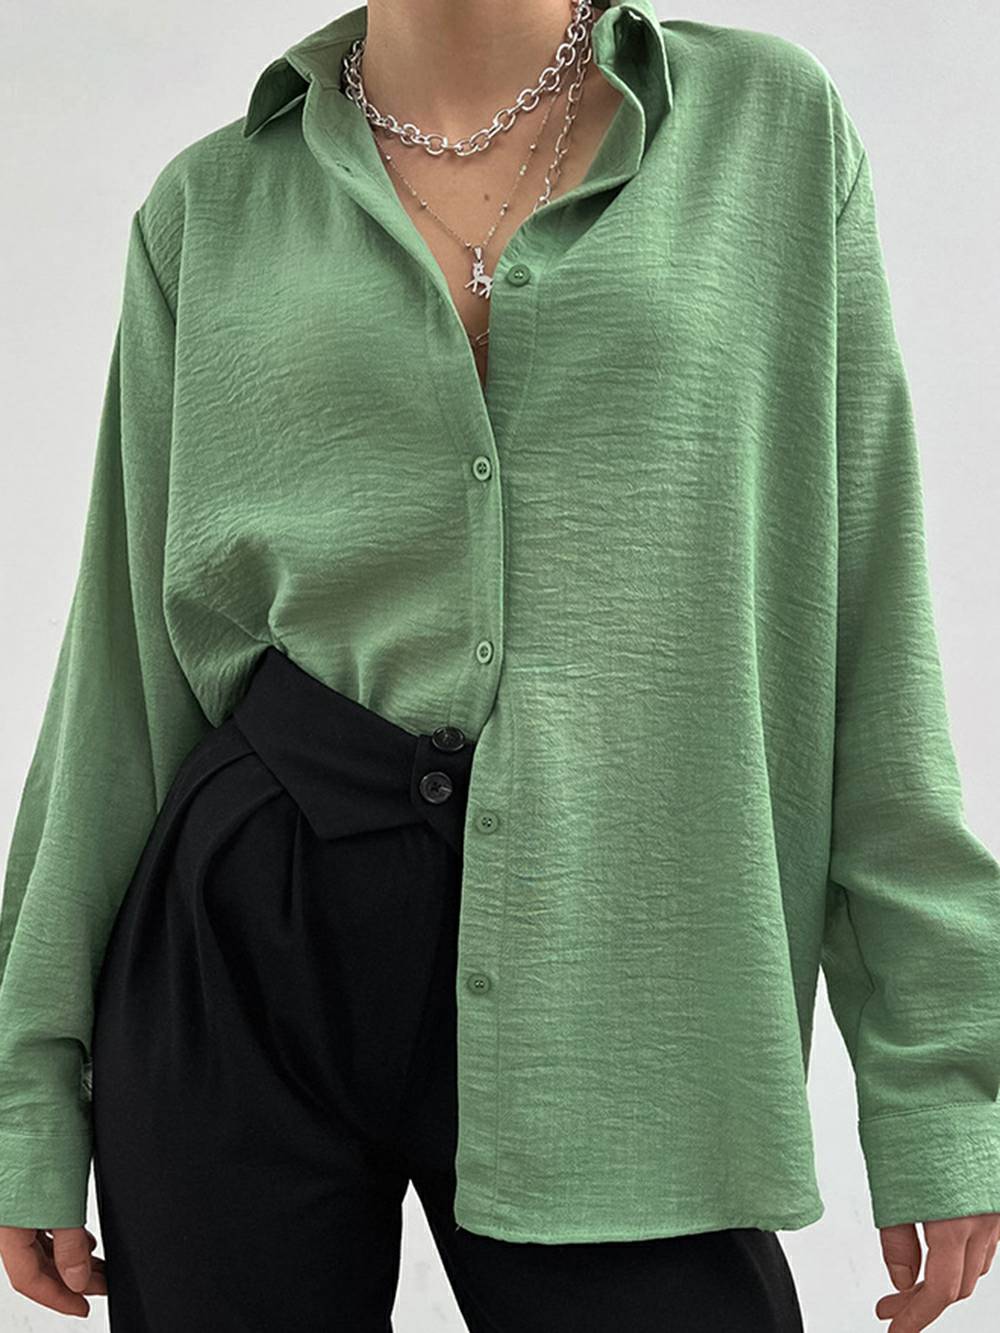 Camisa feminina com gola lapela e manga comprida casual de alta qualidade